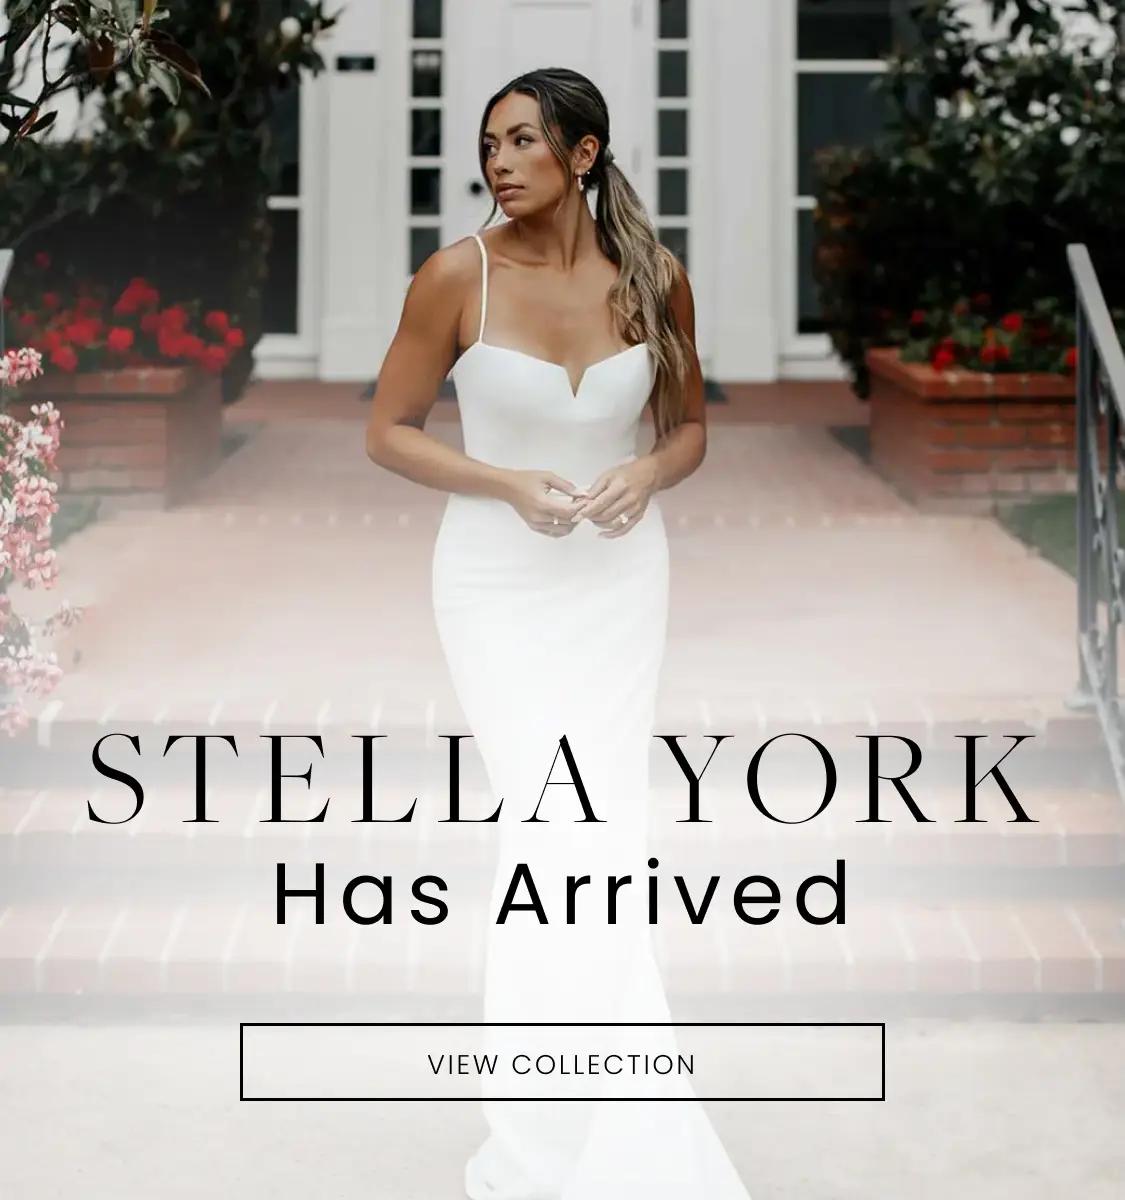 stella york banner for mobile